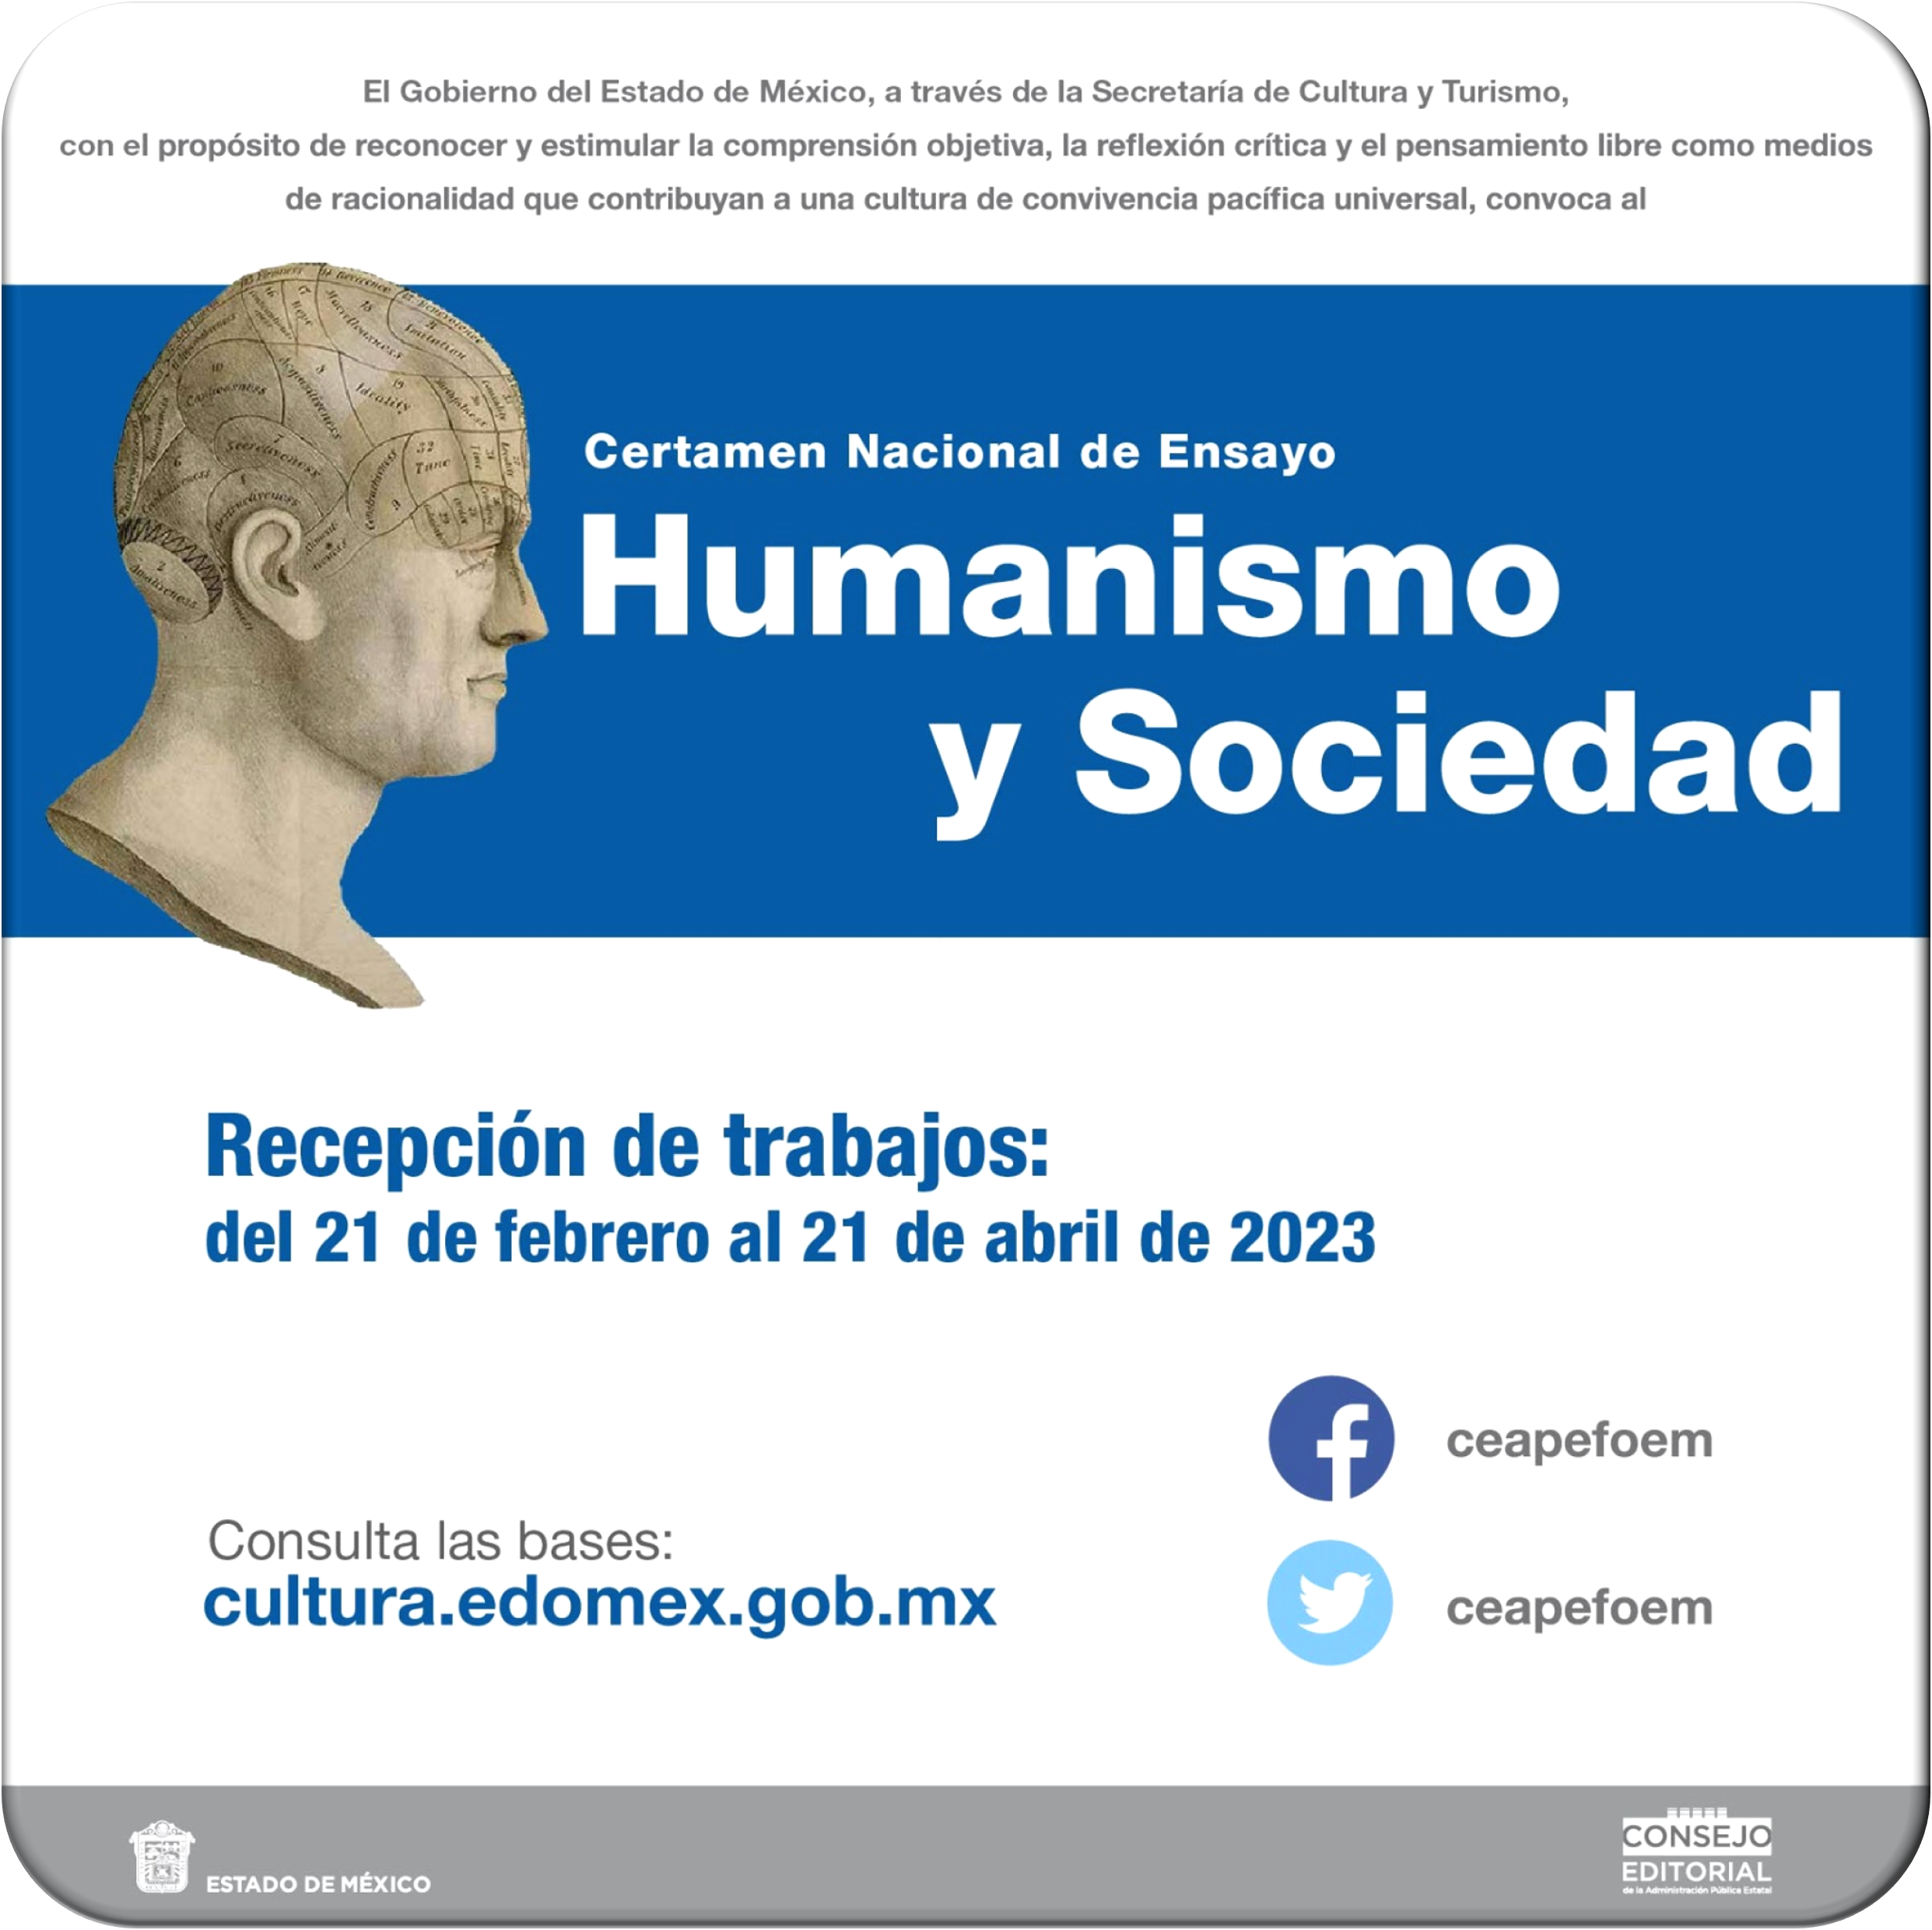 Humanismo y sociedad